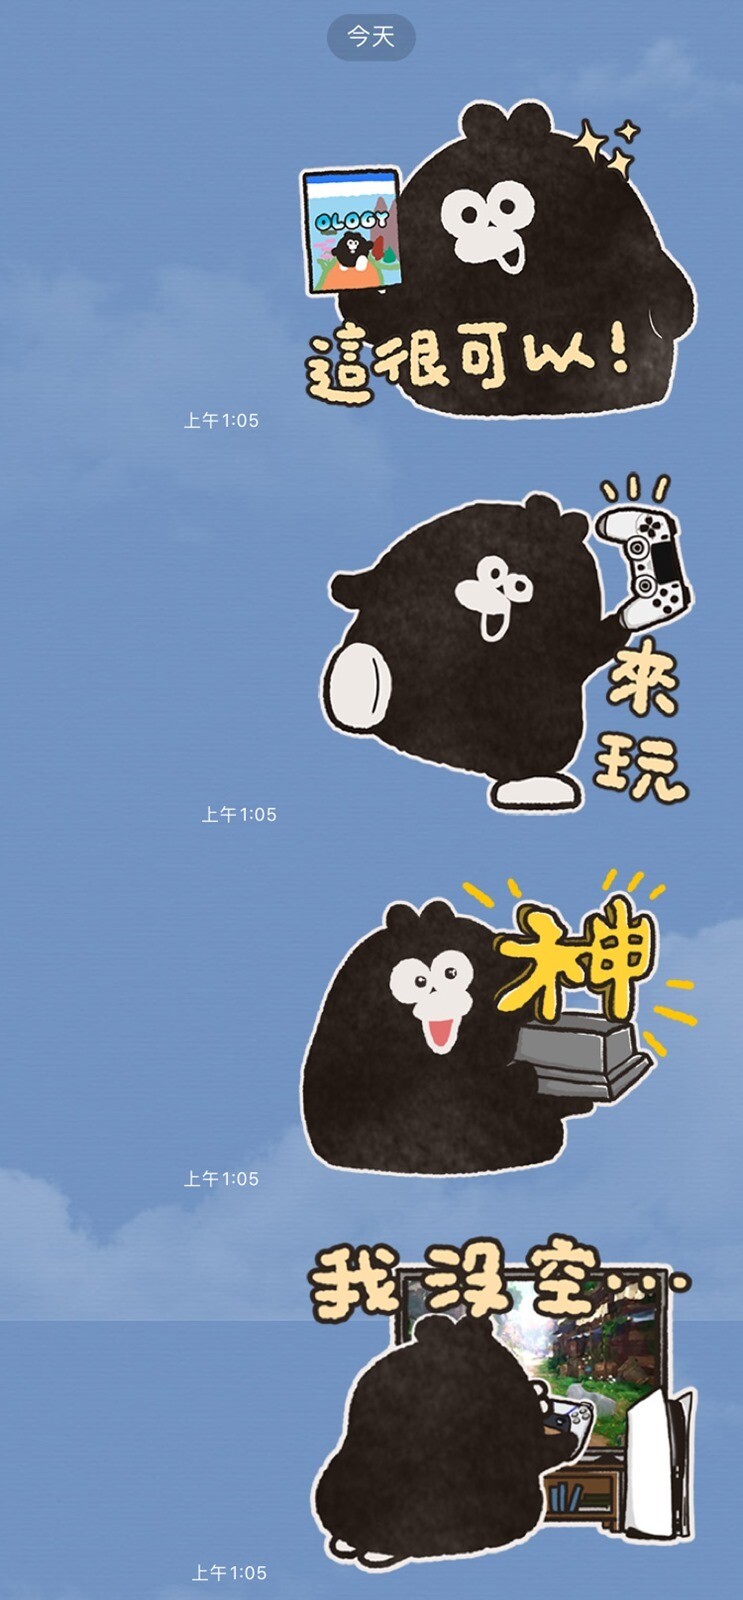 [免費貼圖] 鎖定 SIET LINE 官方帳號「PlayStation Taiwan」成為好友即可免費下載貼圖「奧樂雞的遊戲生活」@3C 達人廖阿輝